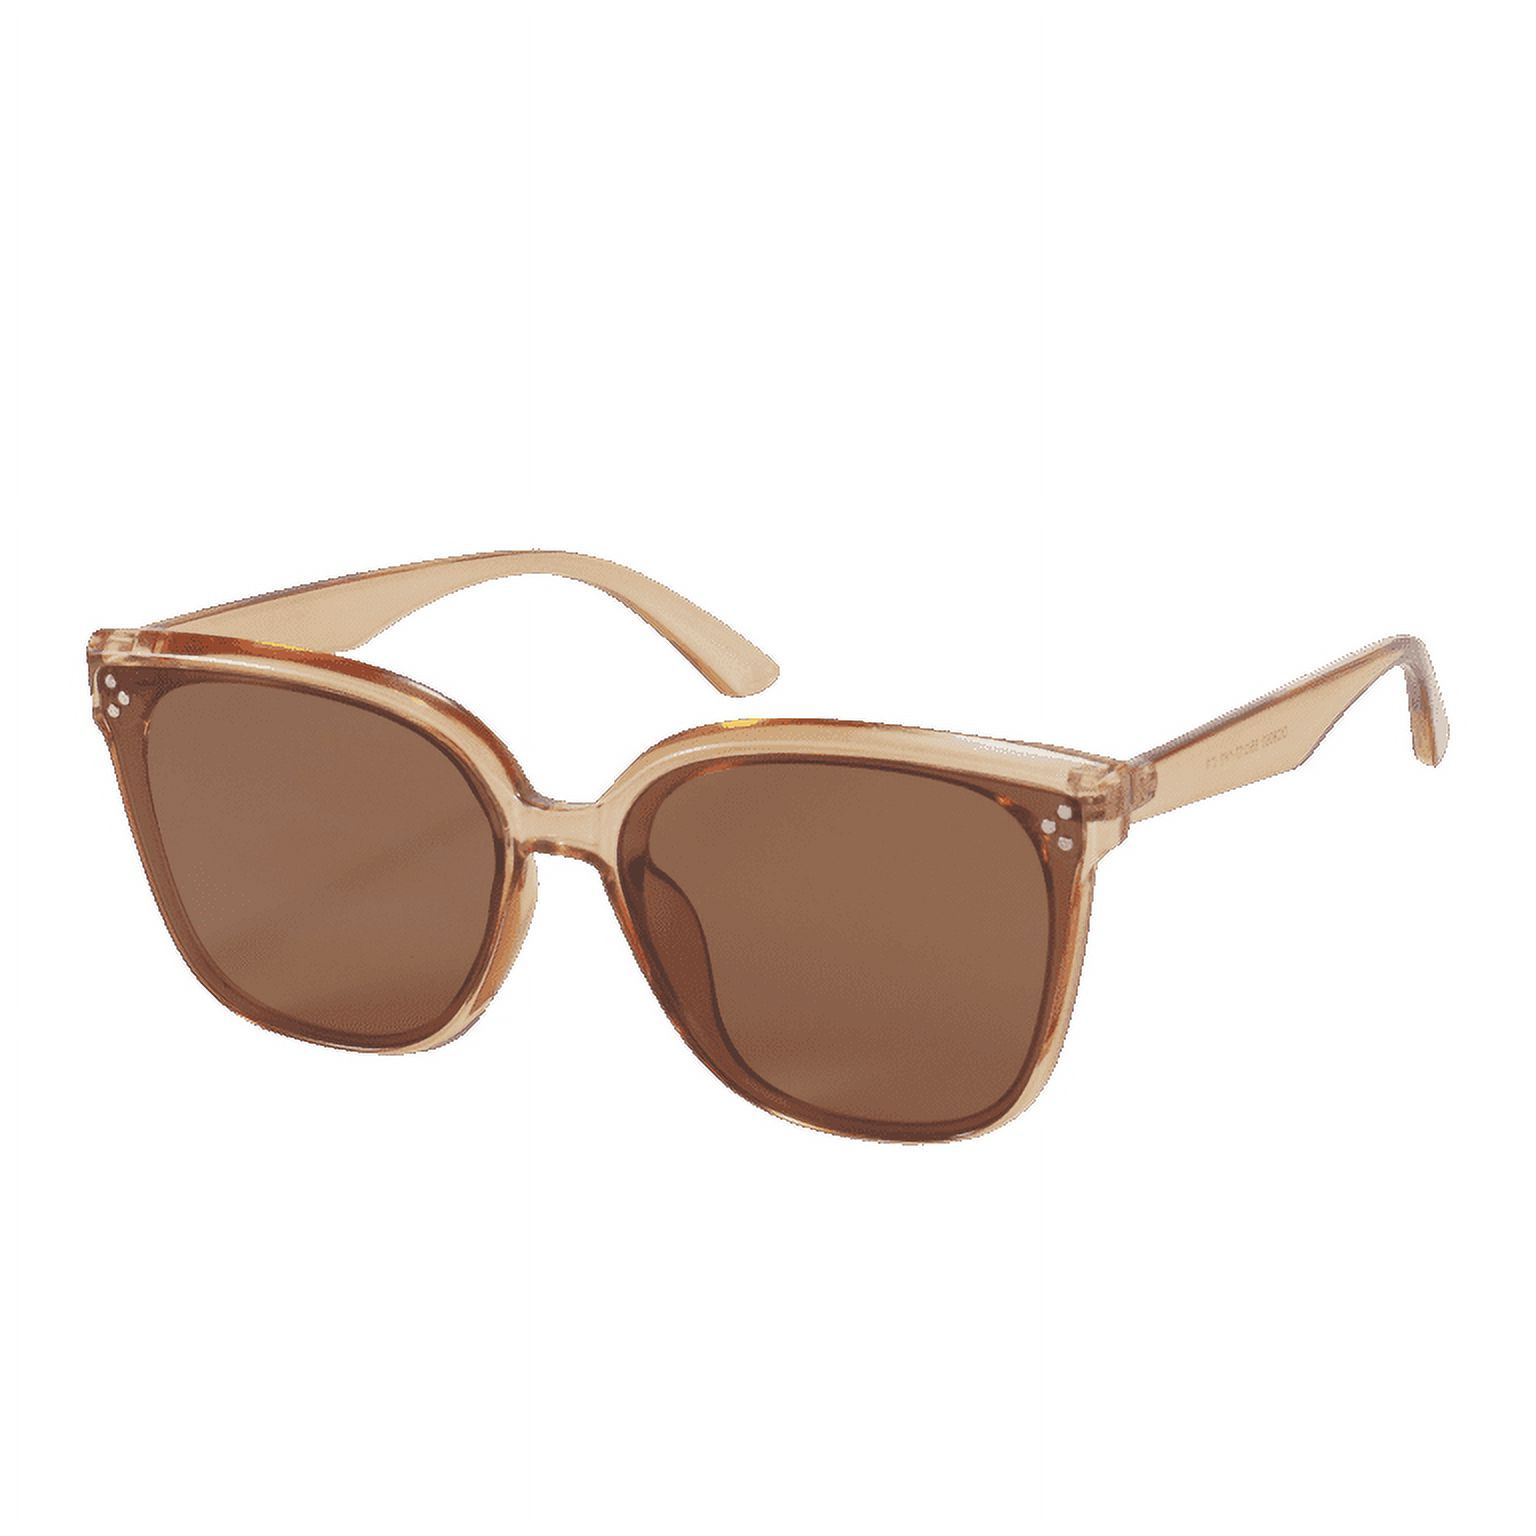 MARE AZZURO Classic Round Sunglasses for Women Retro Vintage Style 100% UV Protection Square Sun ... | Walmart (US)